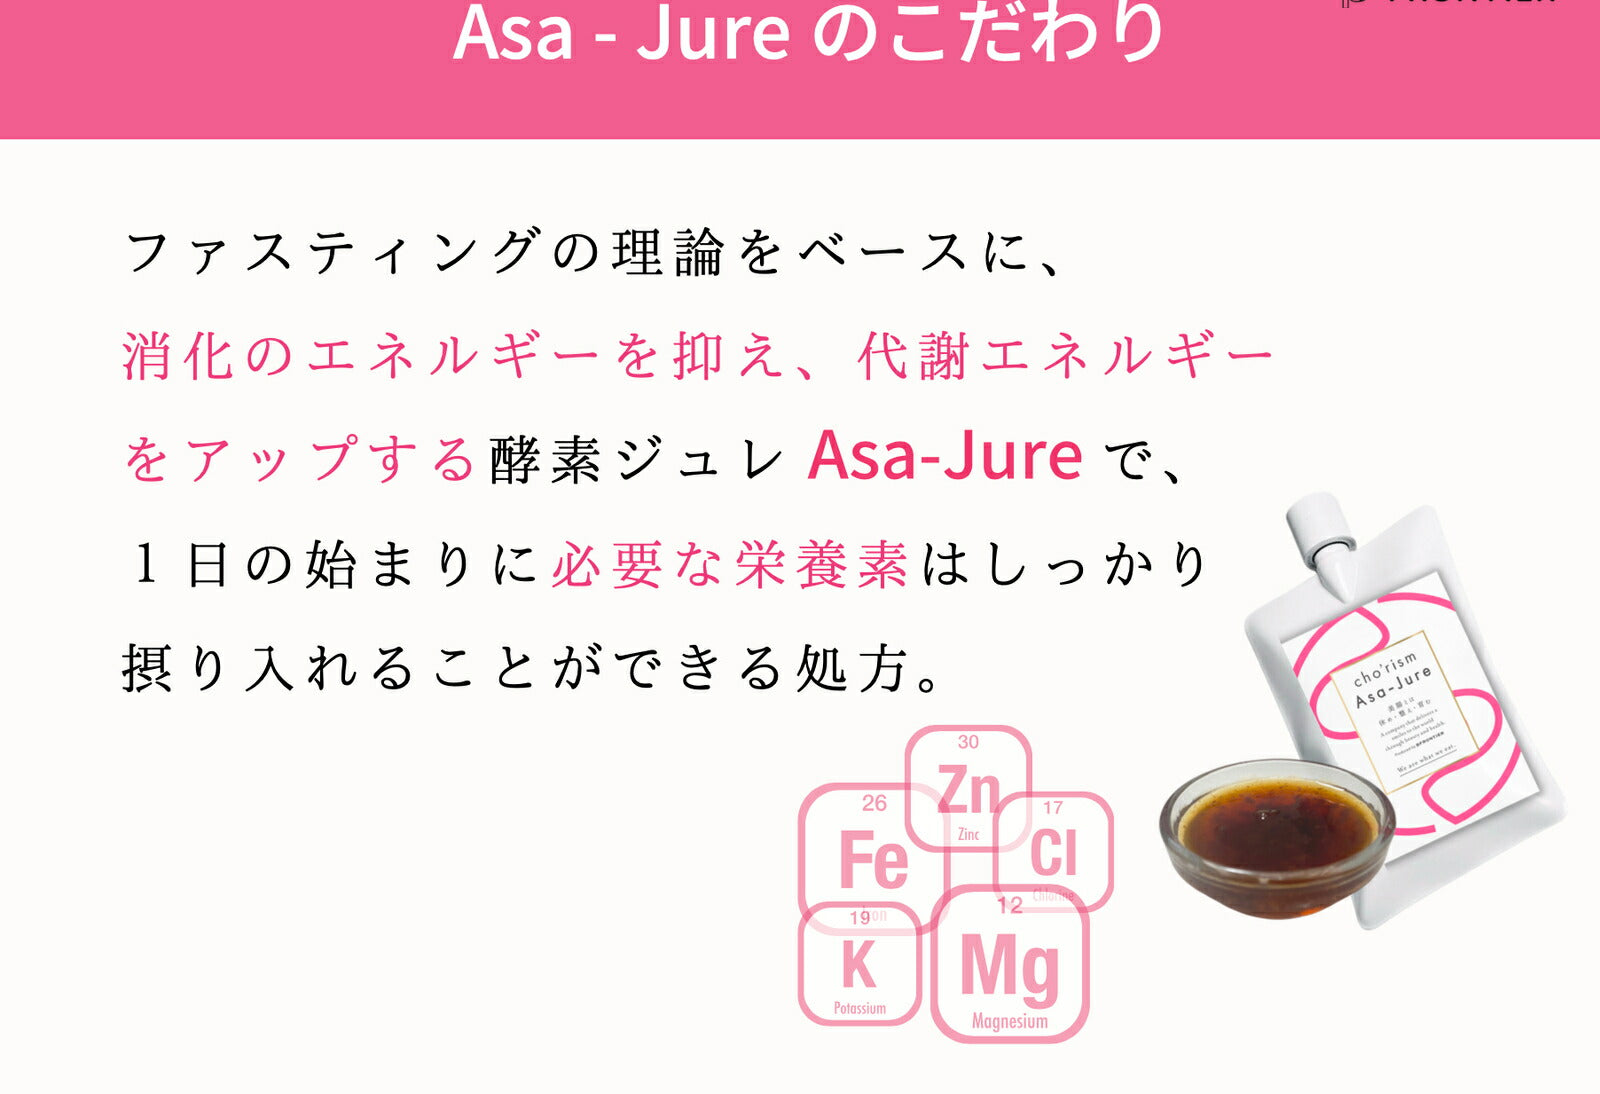 朝ジュレ cho’rism Asa-Jute